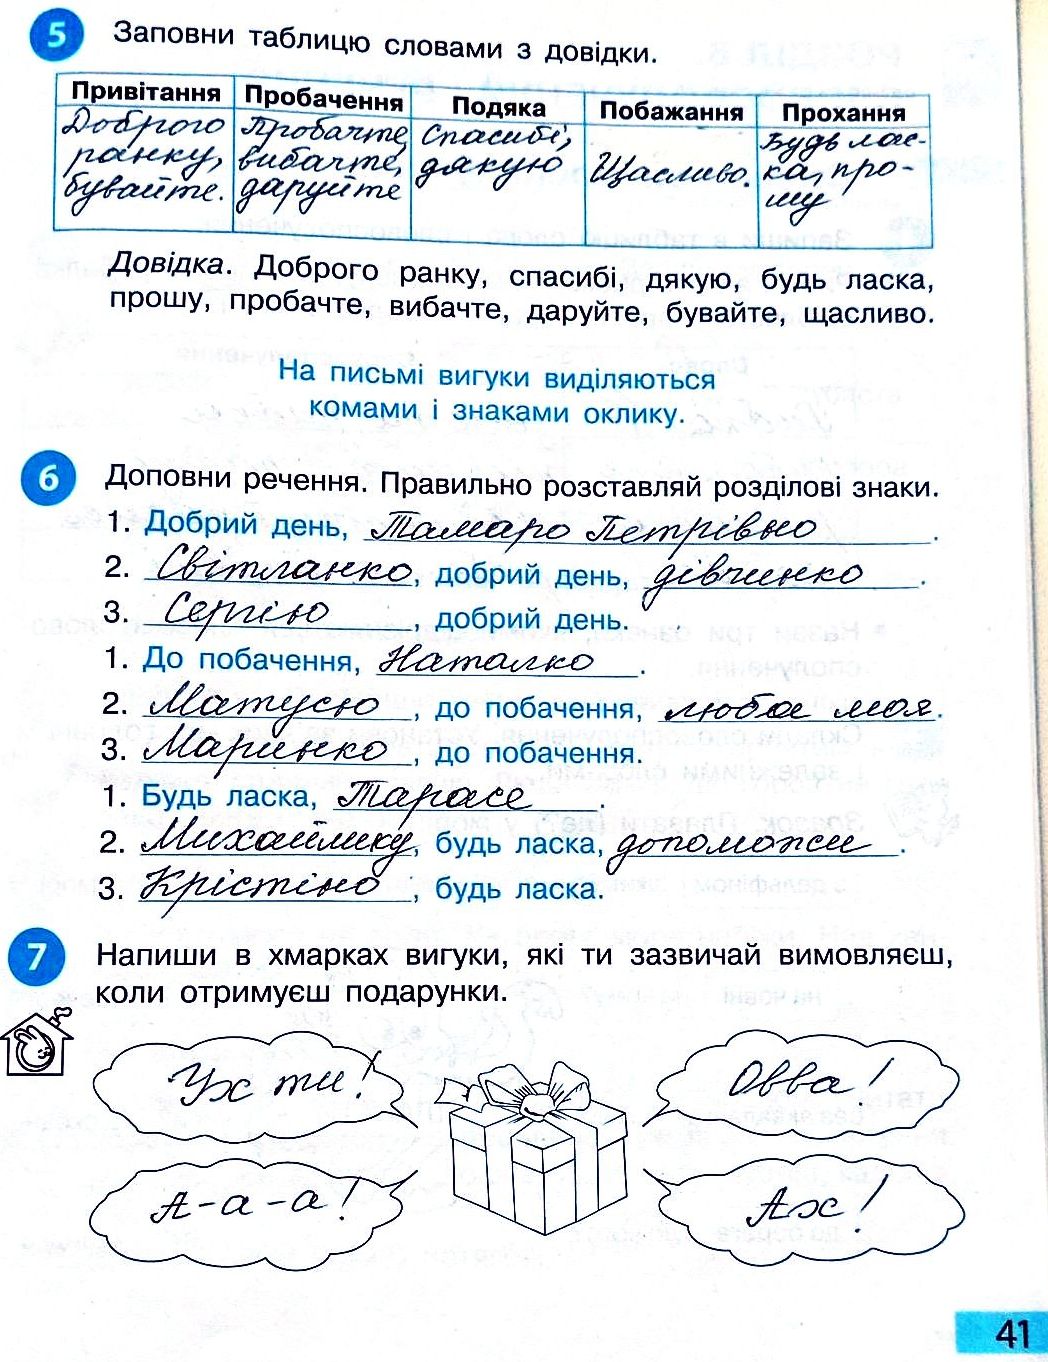 Сторінка 41 частина 2 гдз 3 клас робочий зошит українська мова Большакова